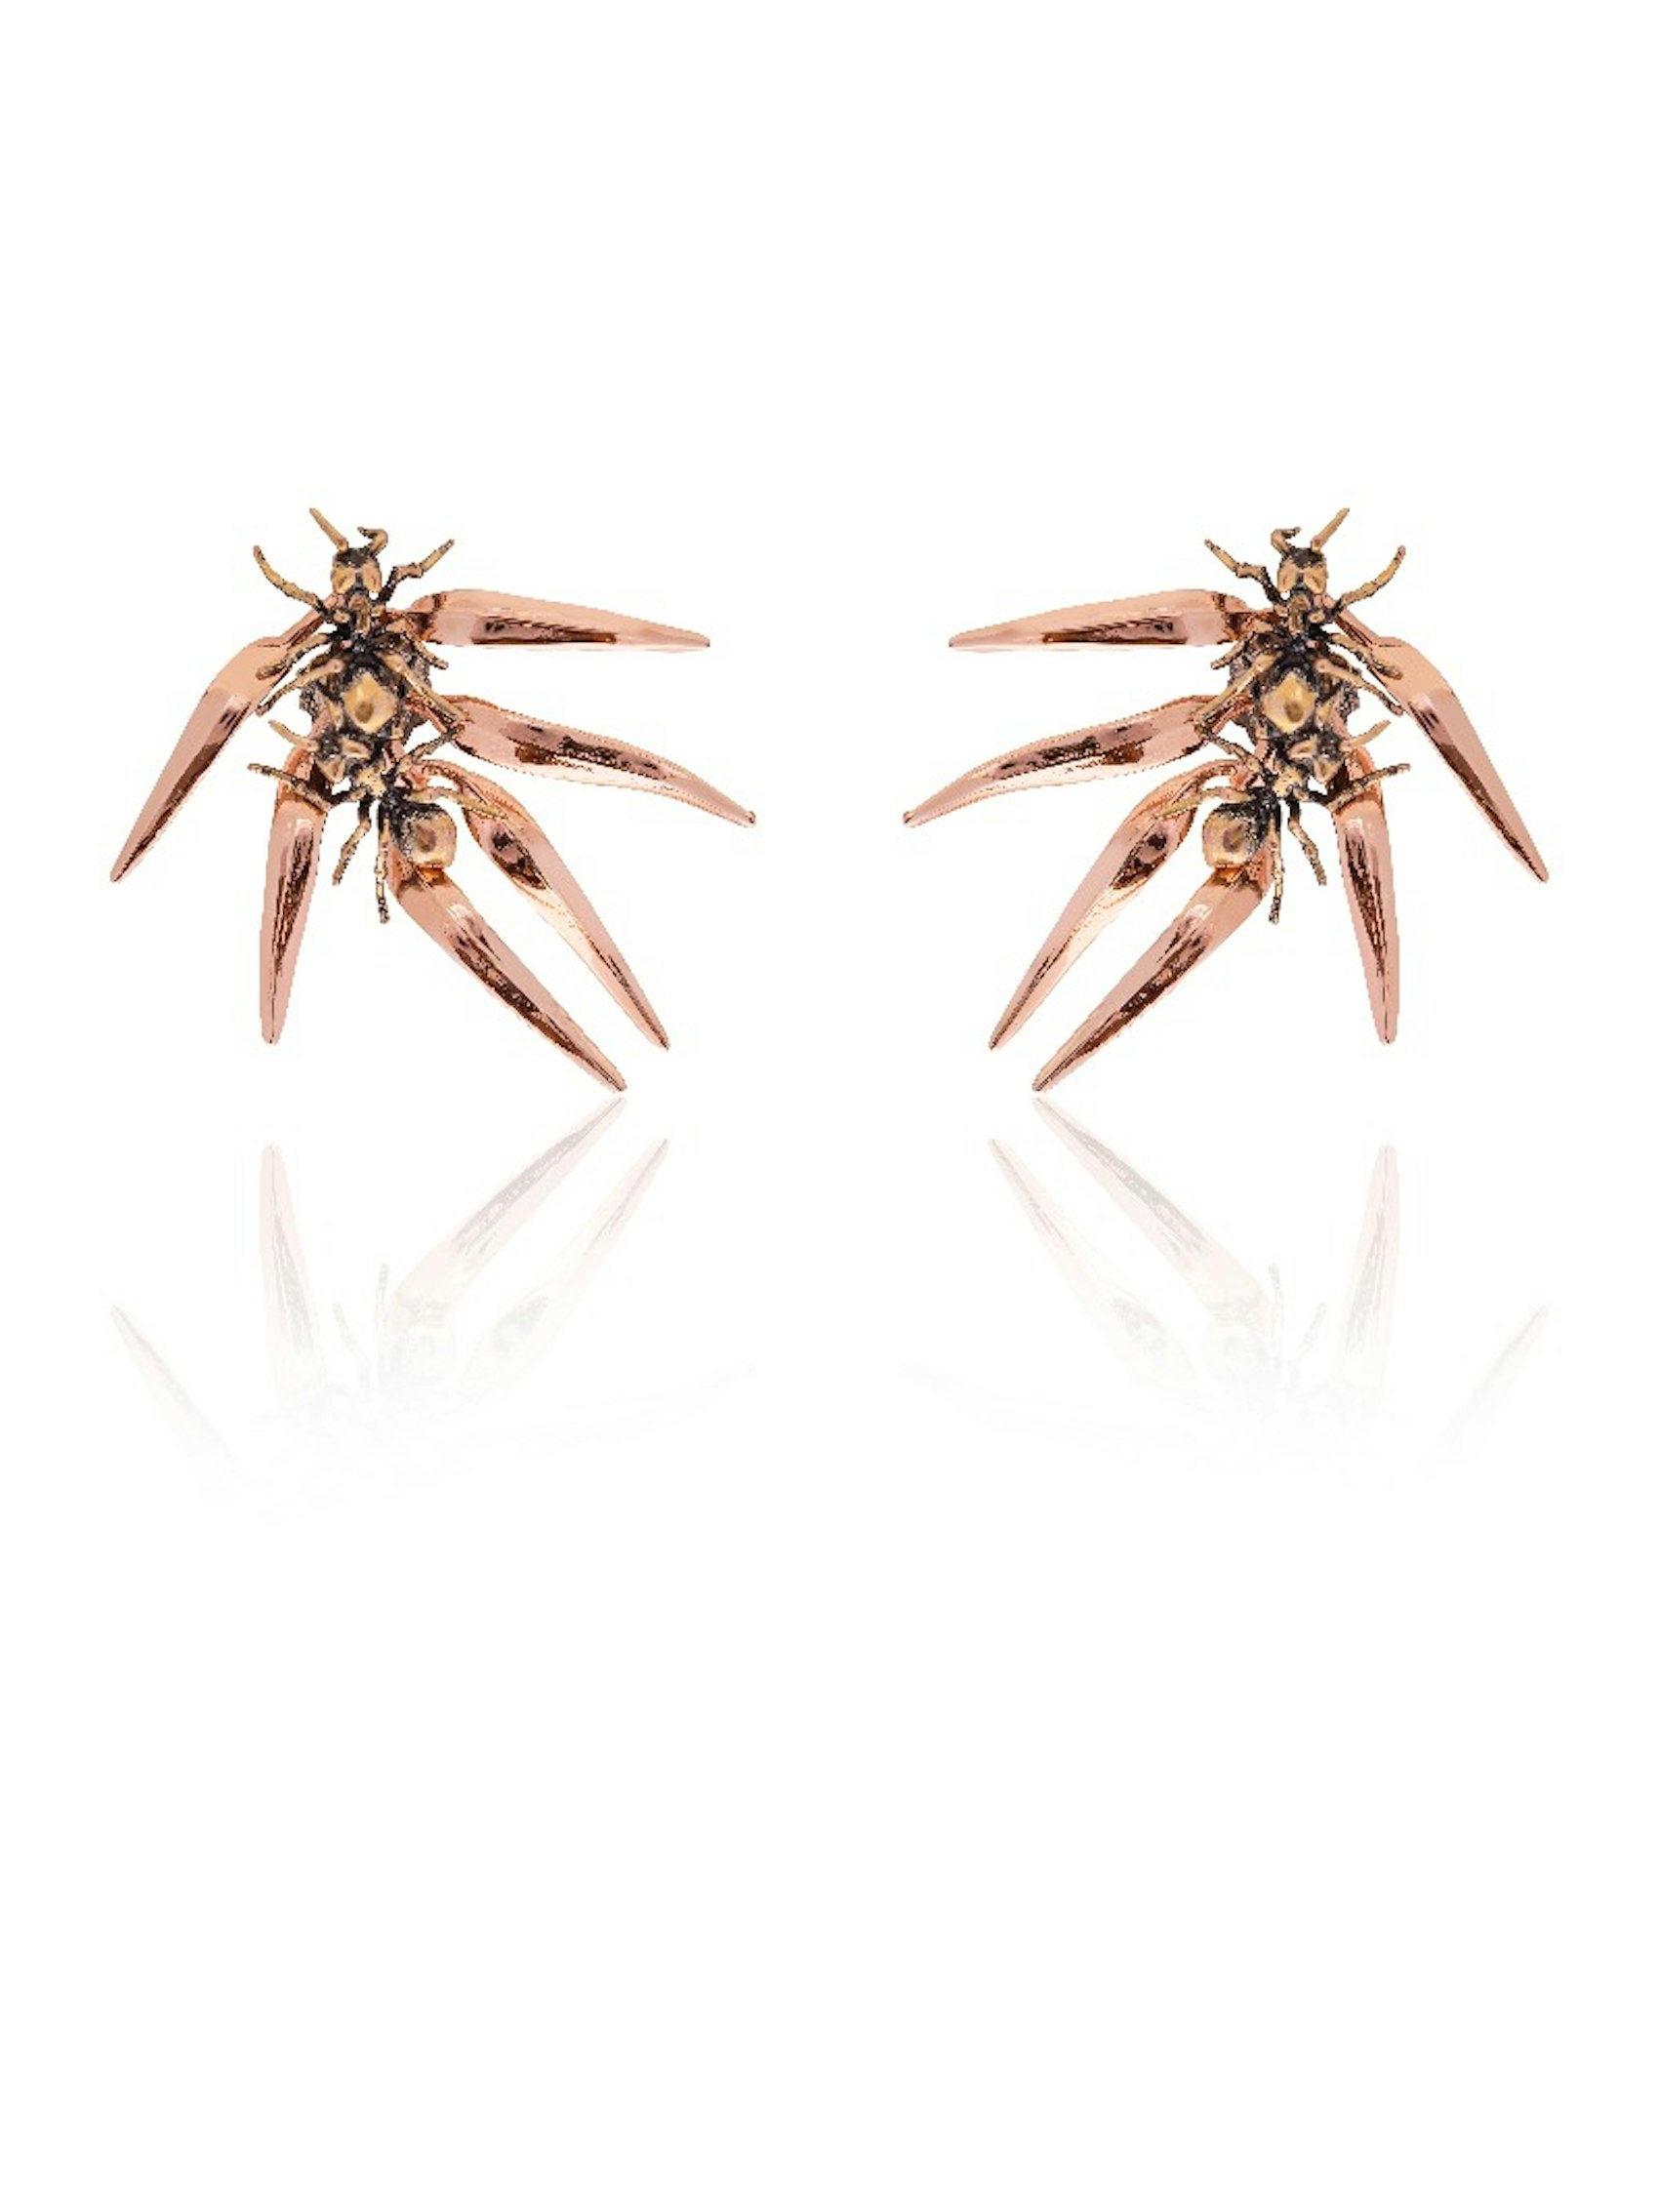 Ants & Ferns Earrings